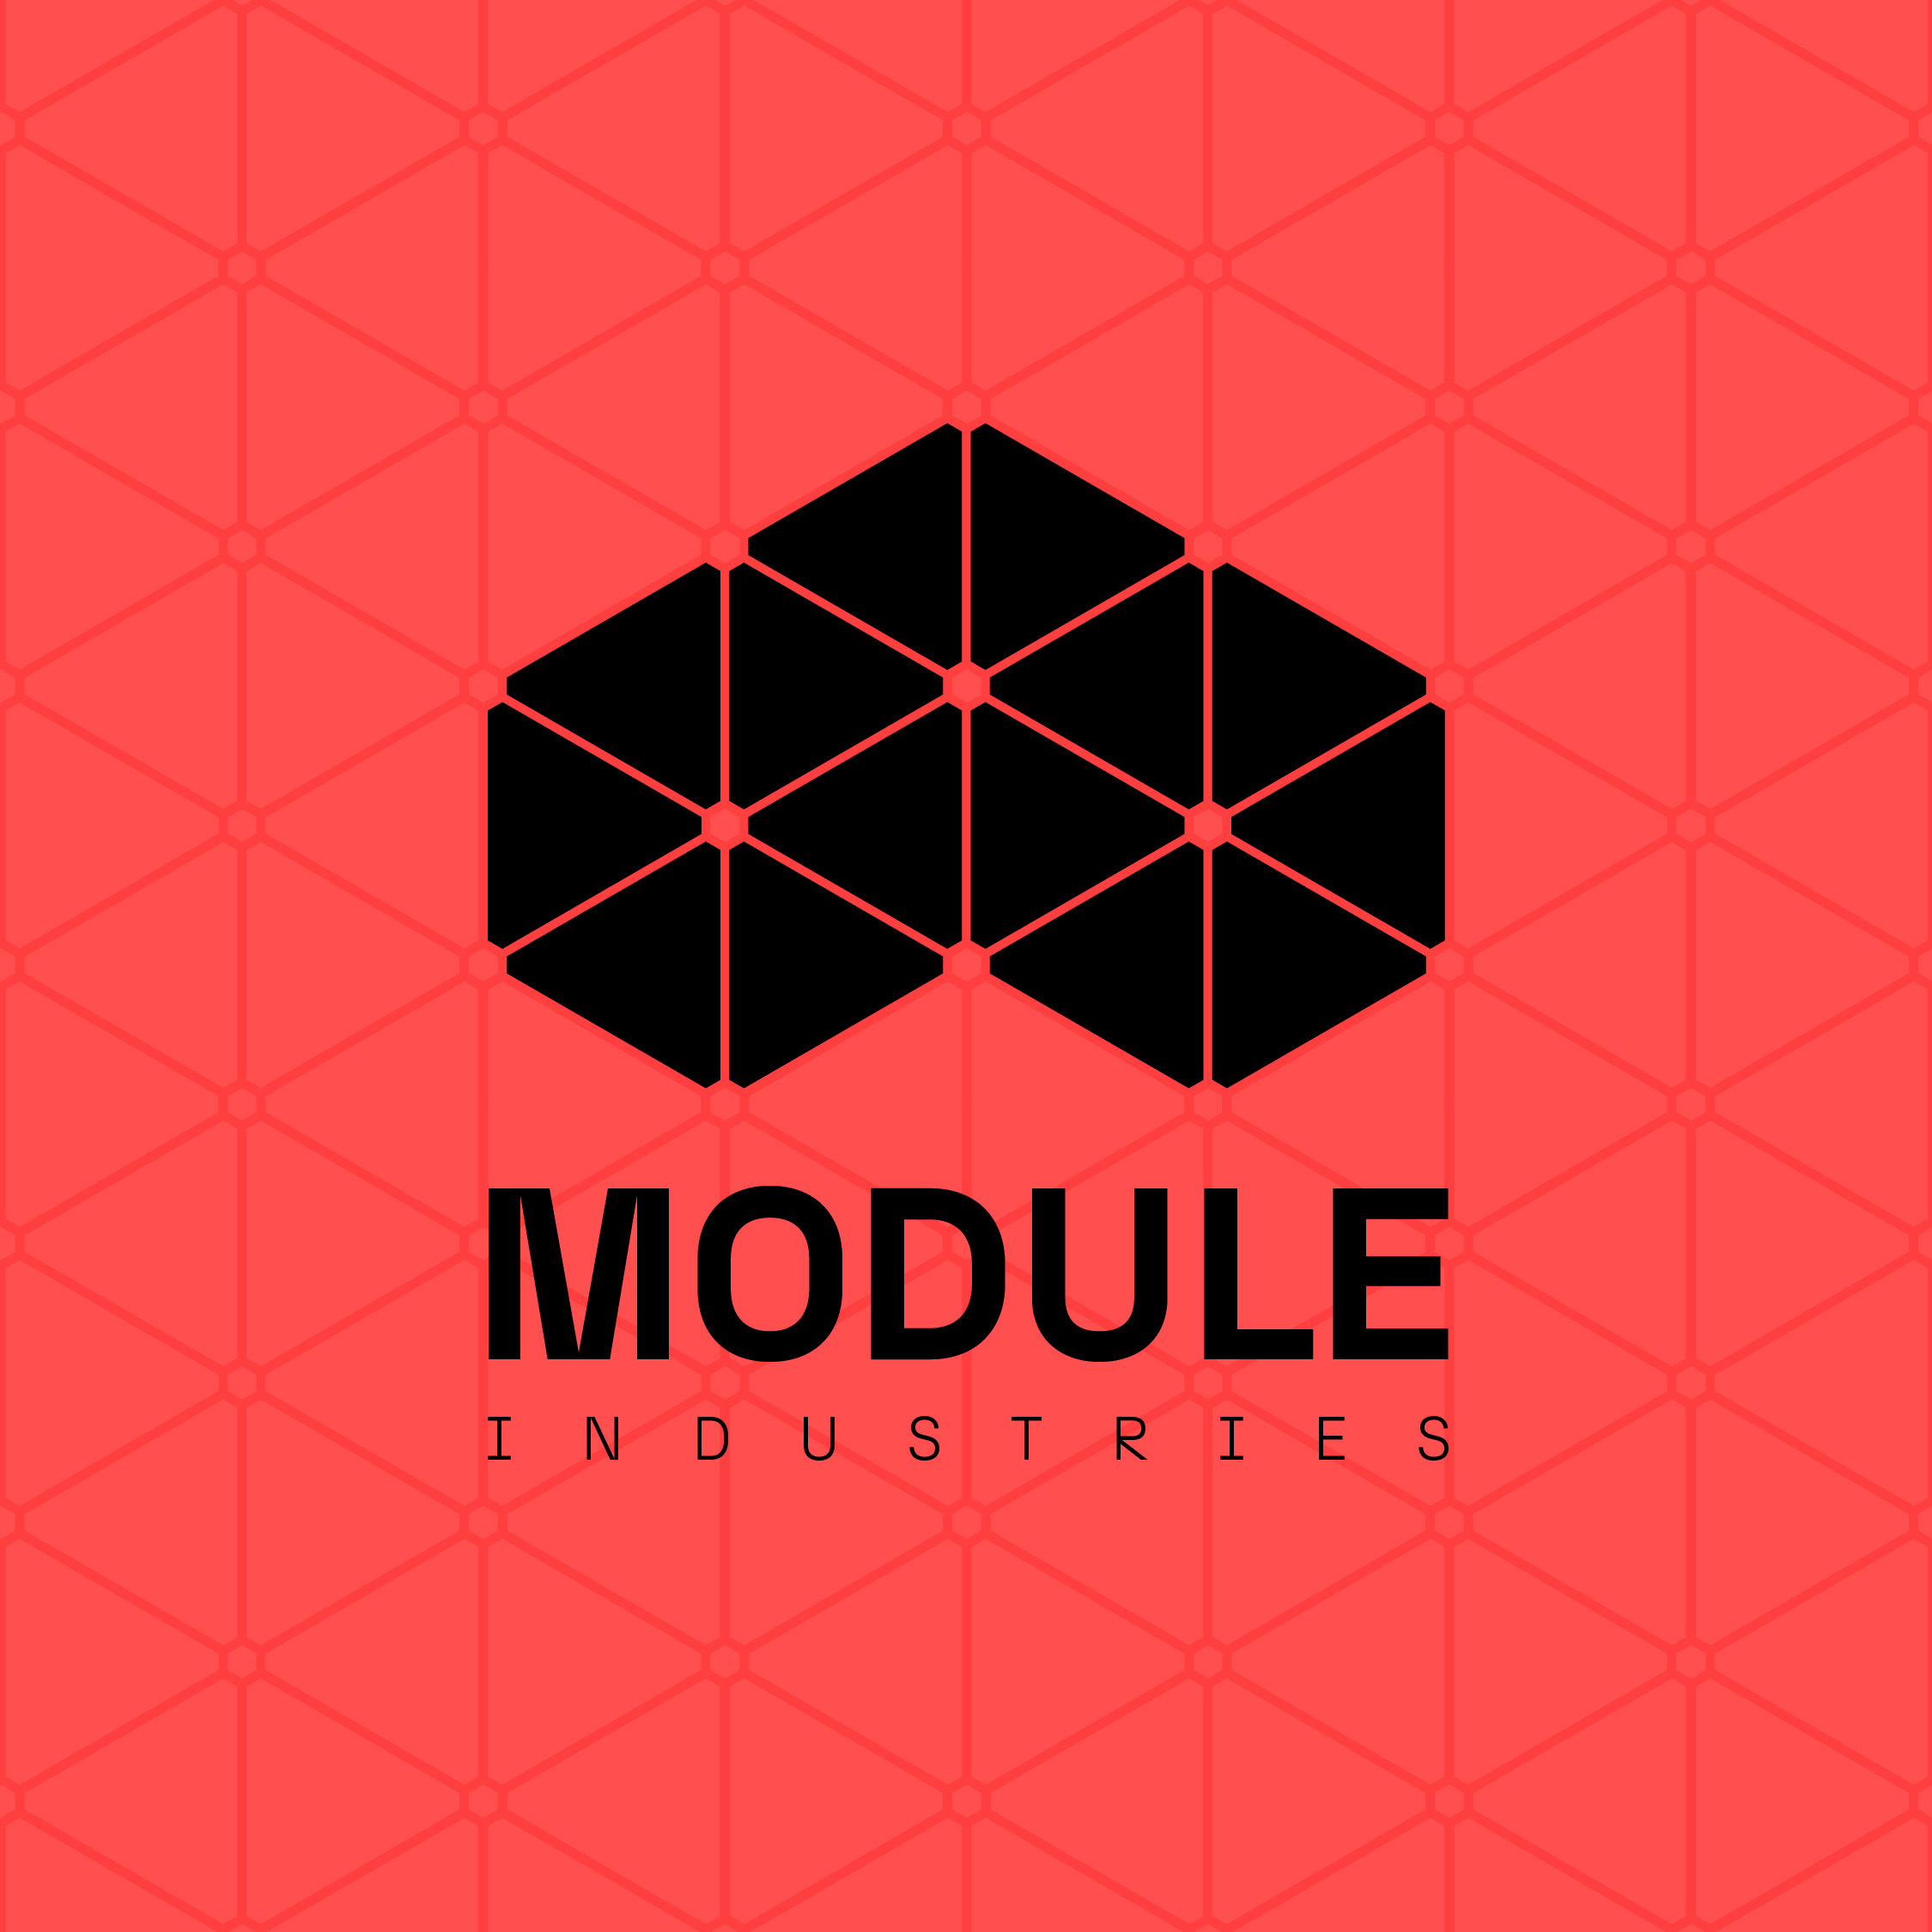 Module Industries